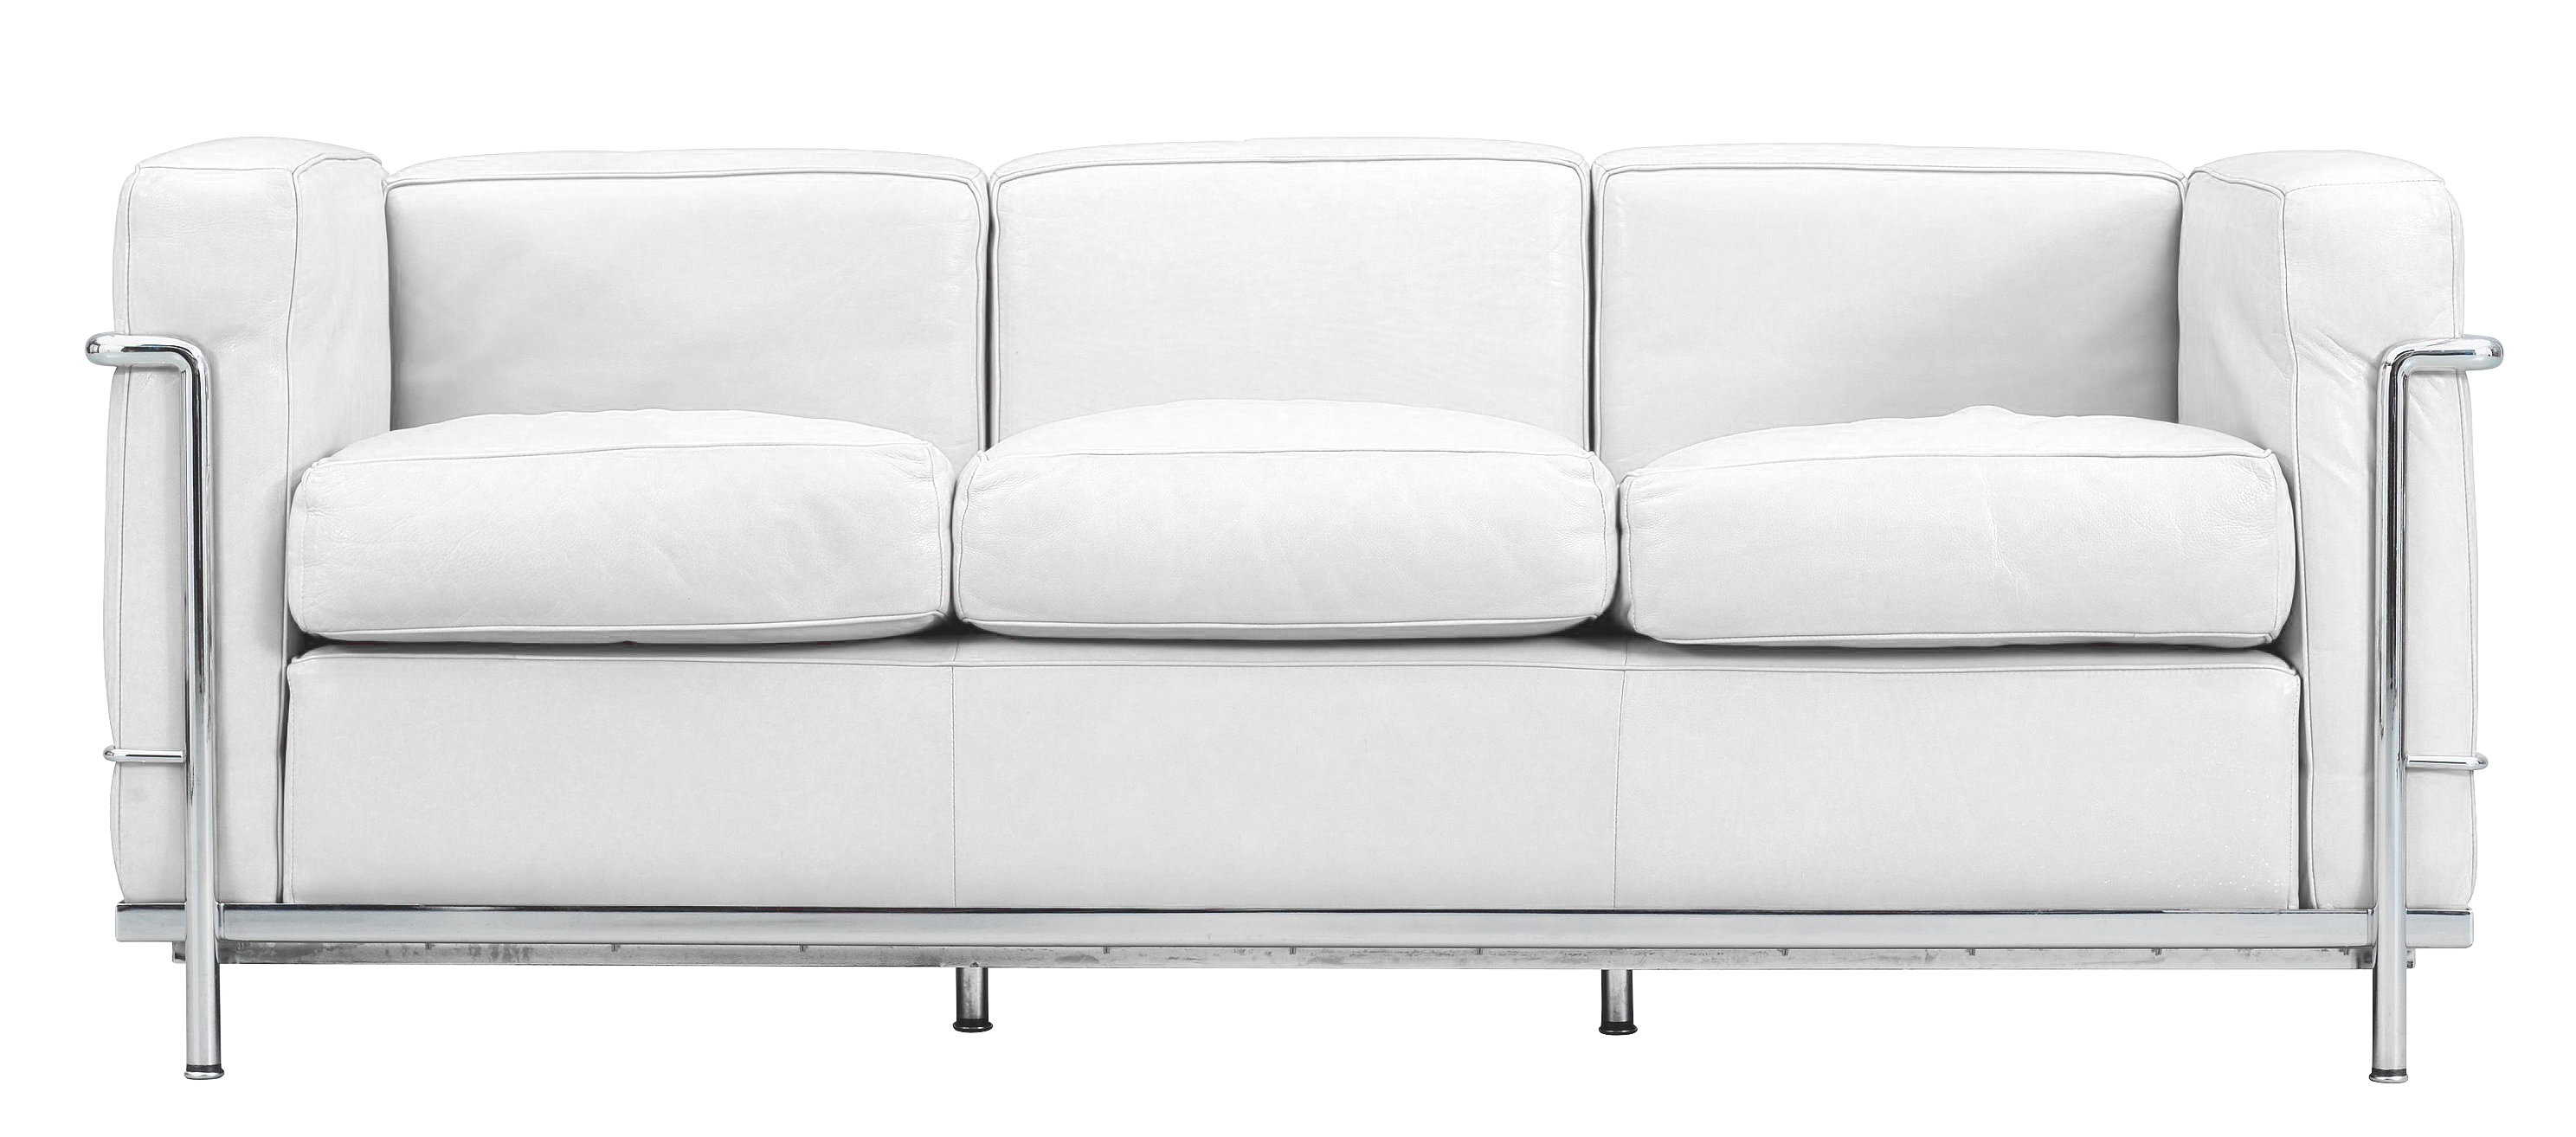 Design Furniture Rental Paris - Sofa LC2  Le Corbusie